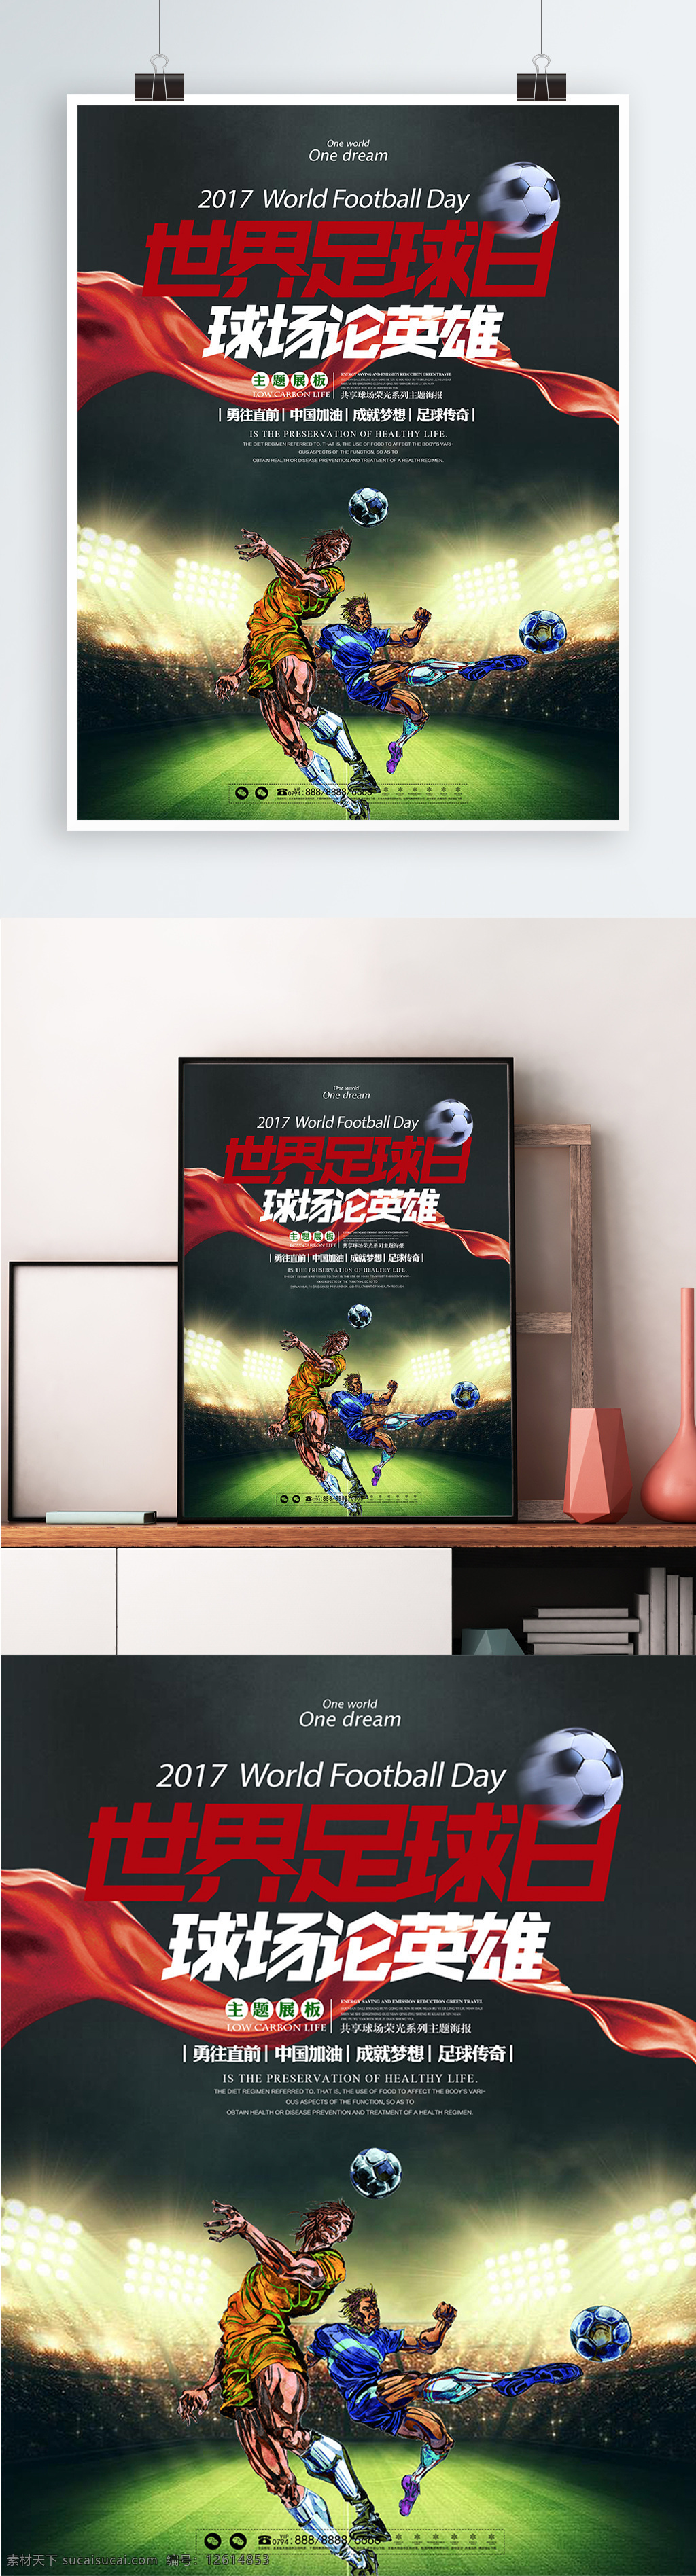 酷 炫 简约 世界 足球 日 主题 宣传海报 展板 酷炫 足球日 赛场 球场 比赛 竞技 宣传 海报